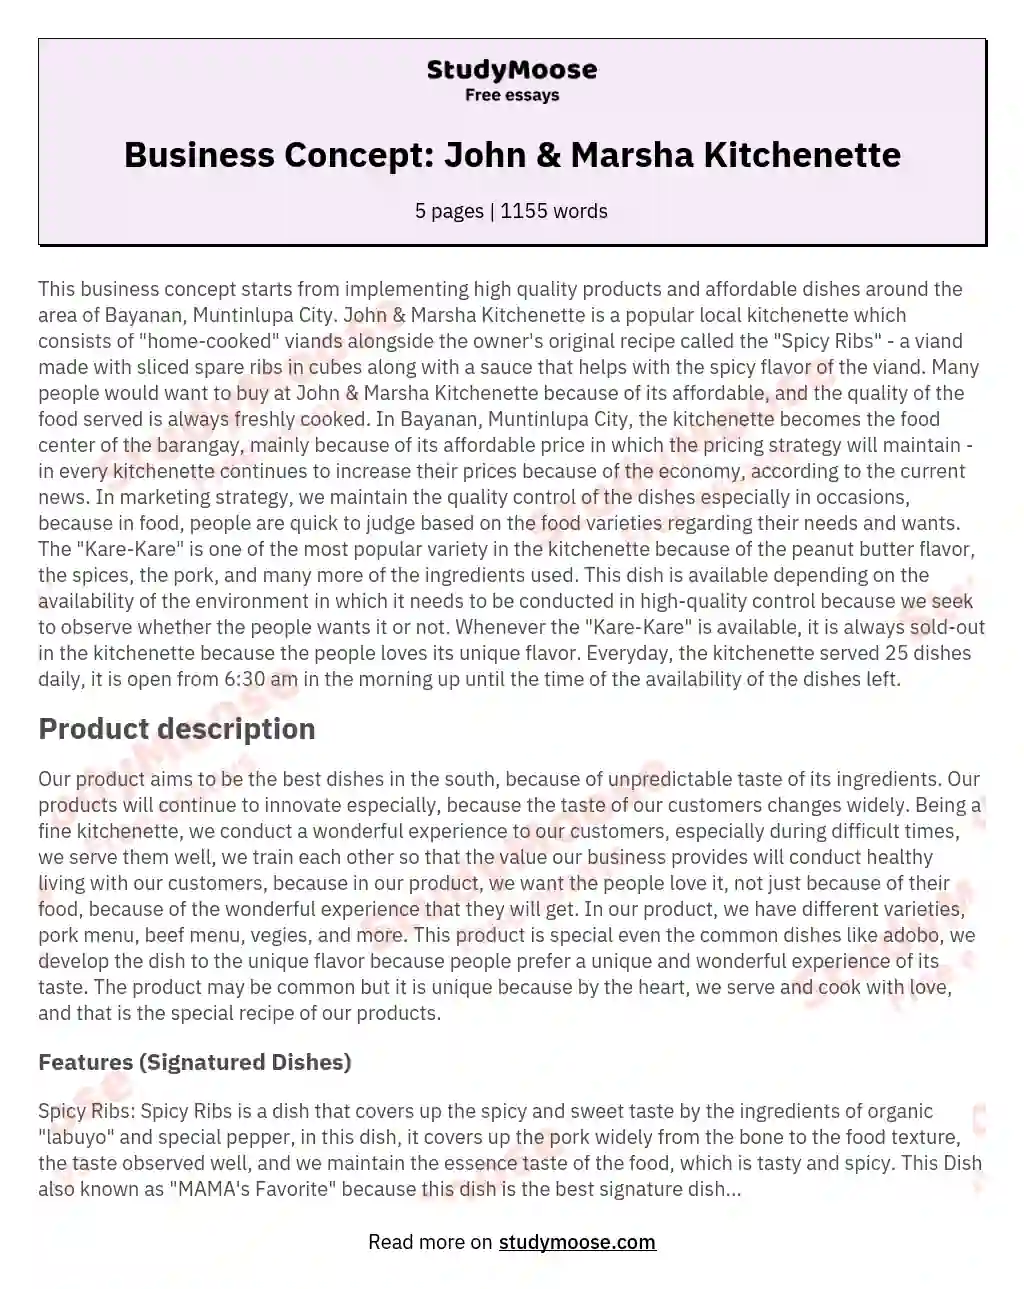 Business Concept: John & Marsha Kitchenette essay